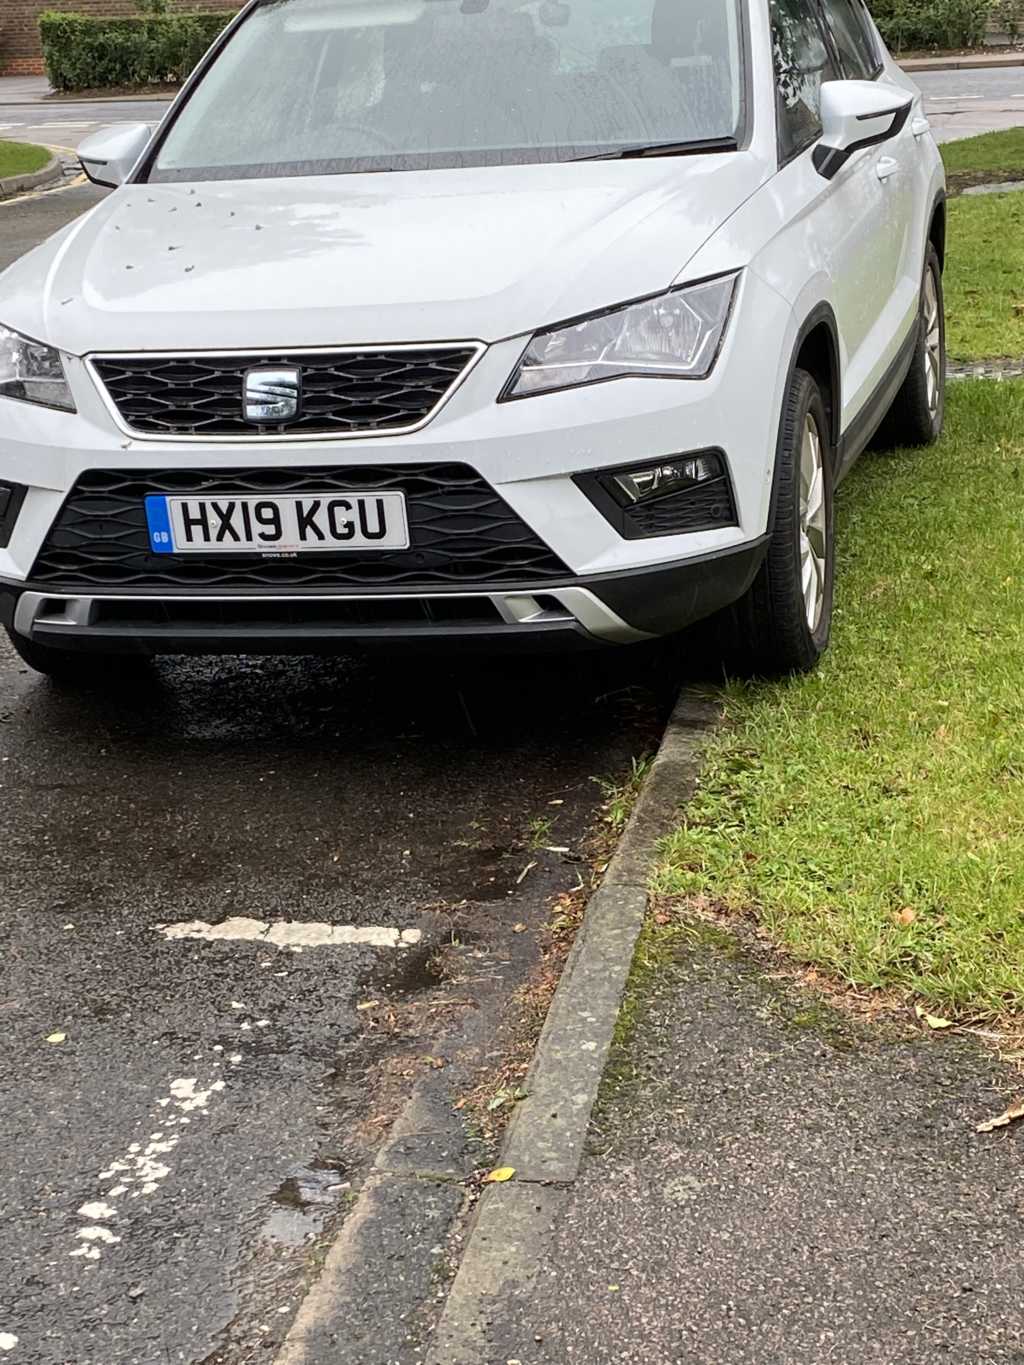 HX19 KGU displaying Selfish Parking